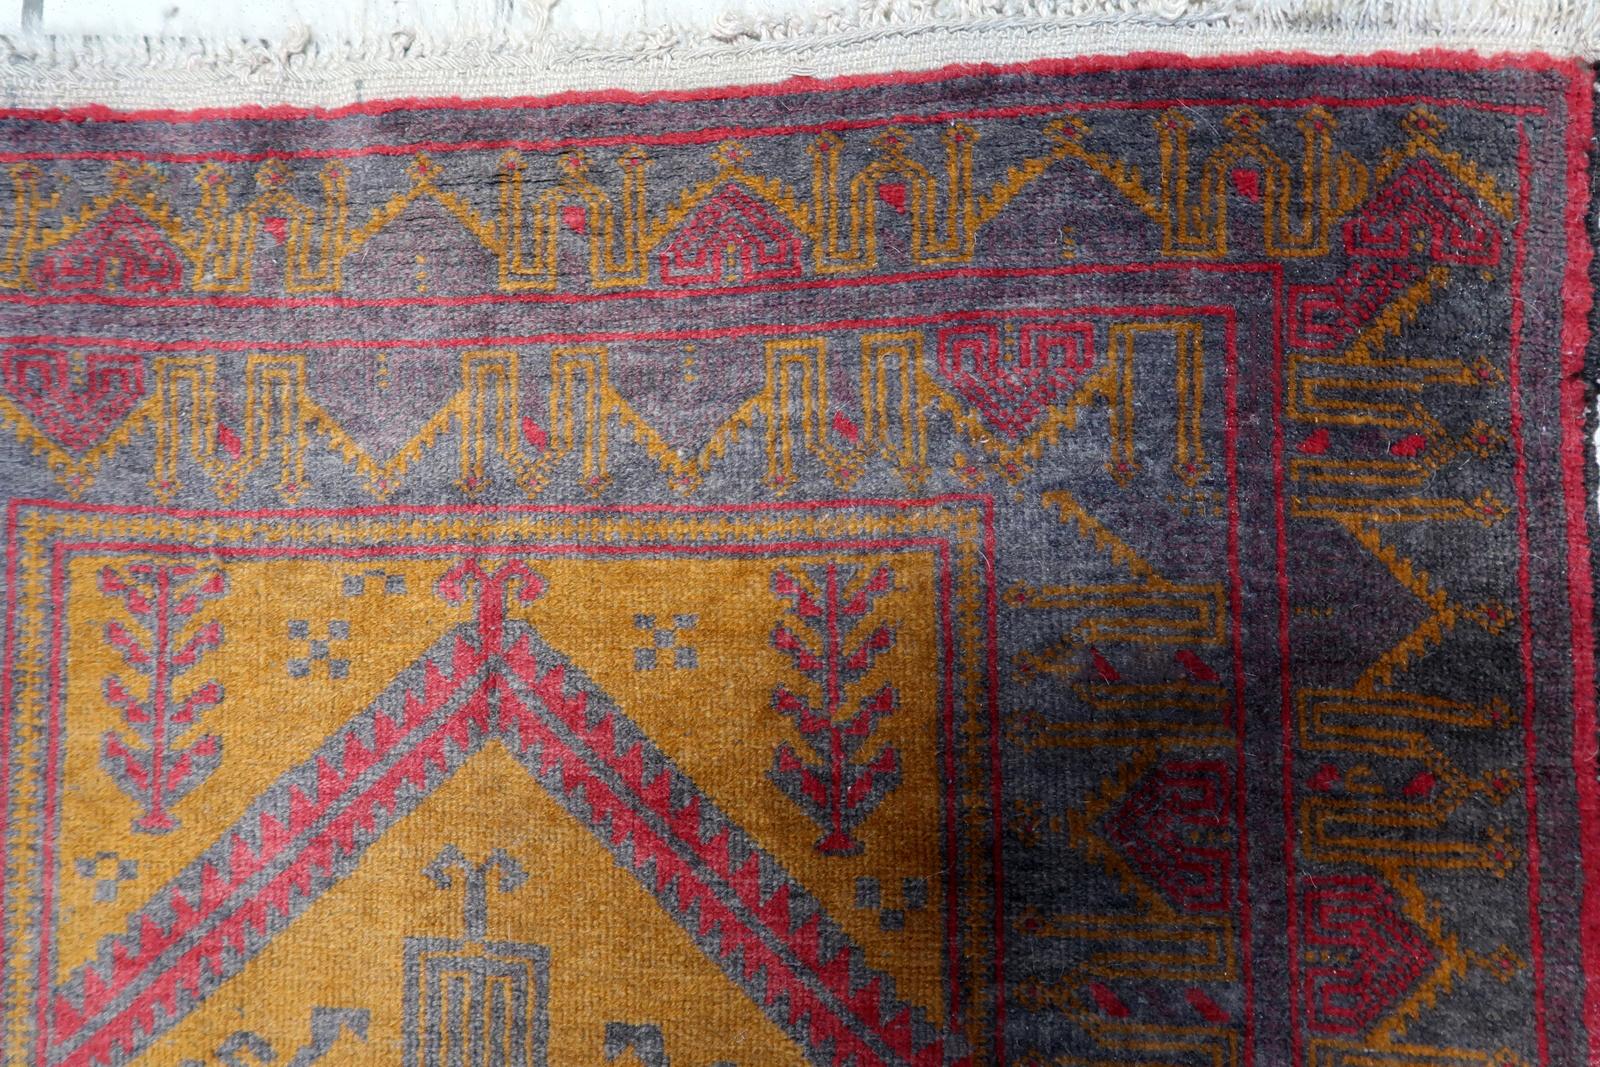 Wir stellen Ihnen unseren bezaubernden handgefertigten afghanischen Belutsch-Teppich aus den 1950er Jahren vor. Dieser exquisite Teppich zeigt einen traditionellen Belutsch-Stil mit einer einzigartigen Mischung aus fuchsiafarbenen, orangefarbenen